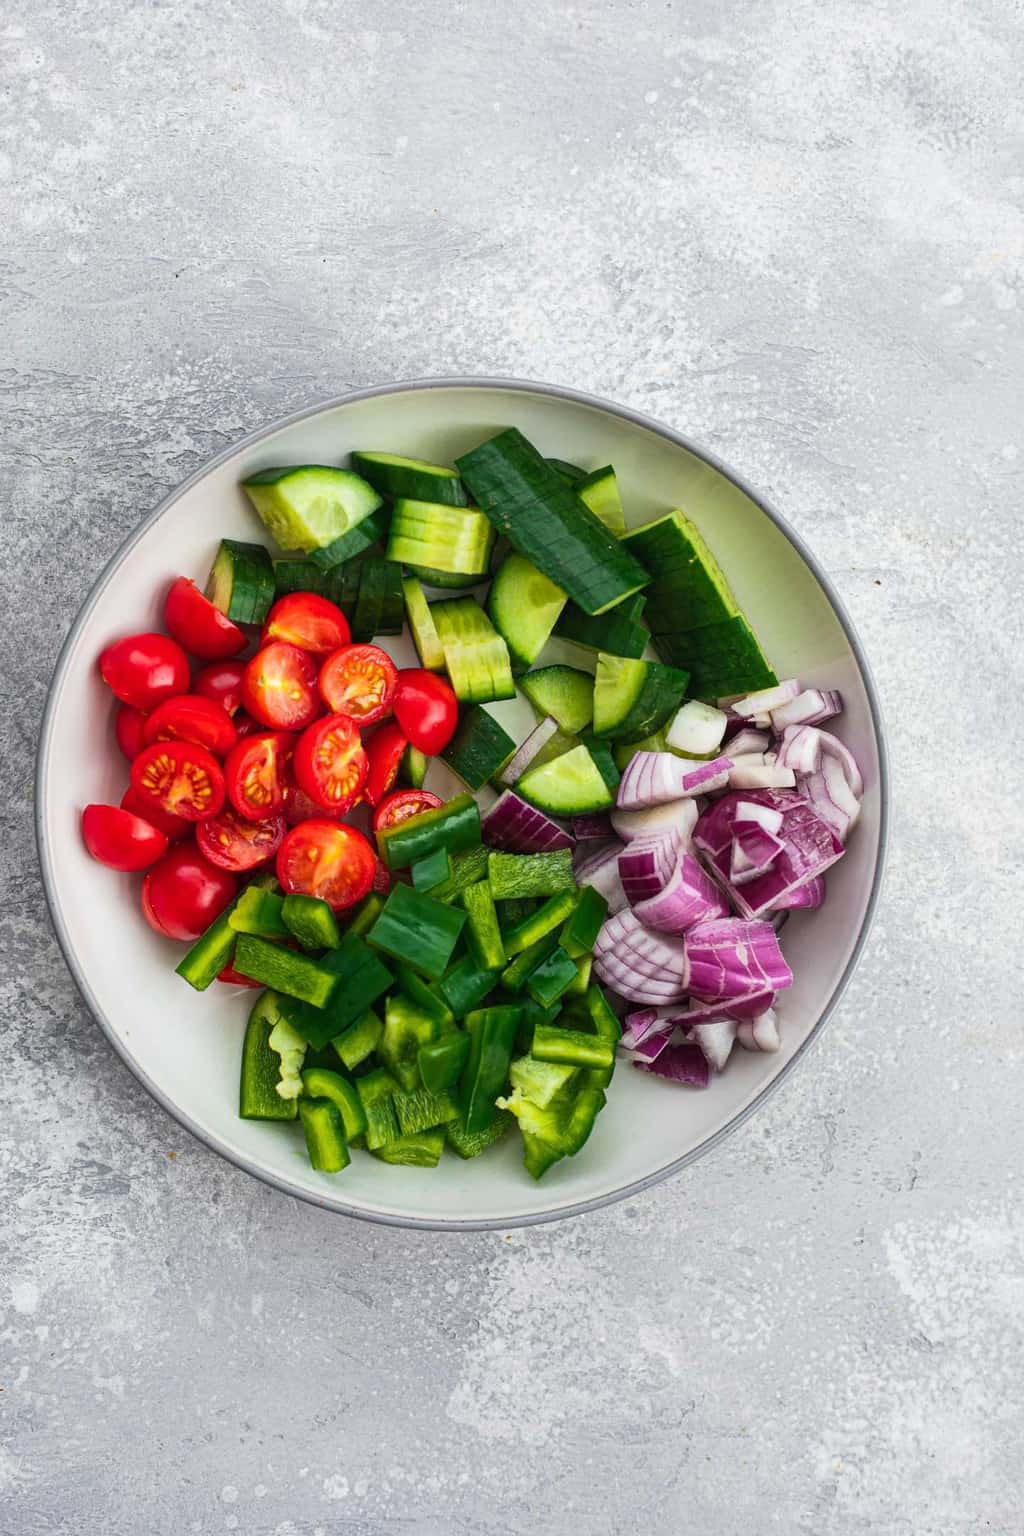 Bowl of salad vegetables